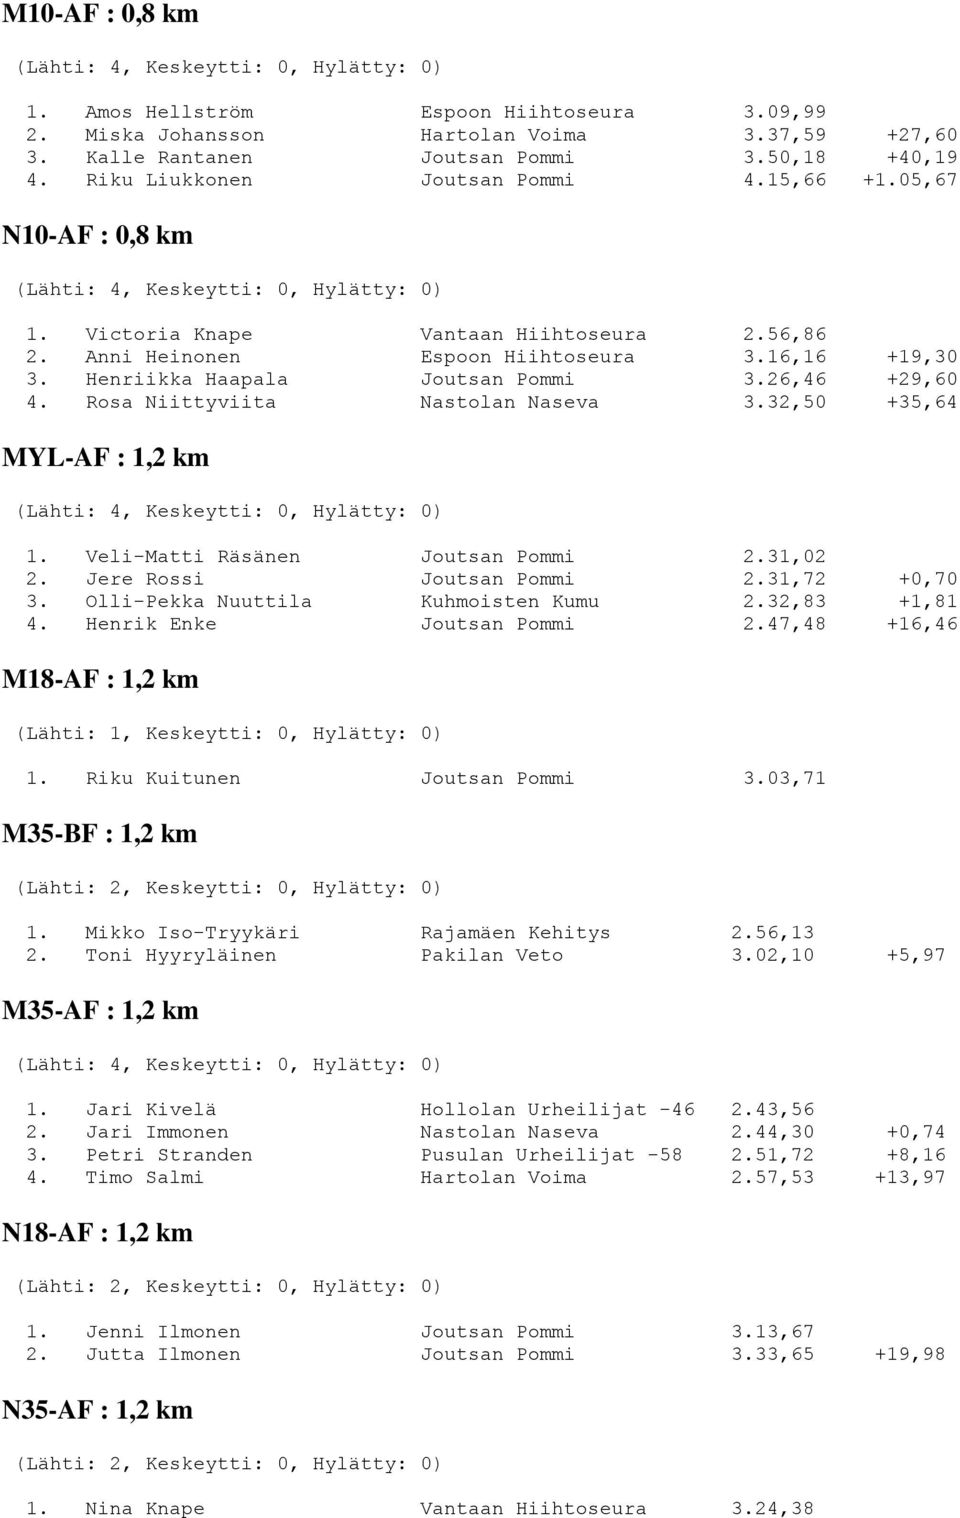 Rosa Niittyviita Nastolan Naseva 3.32,50 +35,64 MYL-AF : 1,2 km 1. Veli-Matti Räsänen Joutsan Pommi 2.31,02 2. Jere Rossi Joutsan Pommi 2.31,72 +0,70 3. Olli-Pekka Nuuttila Kuhmoisten Kumu 2.